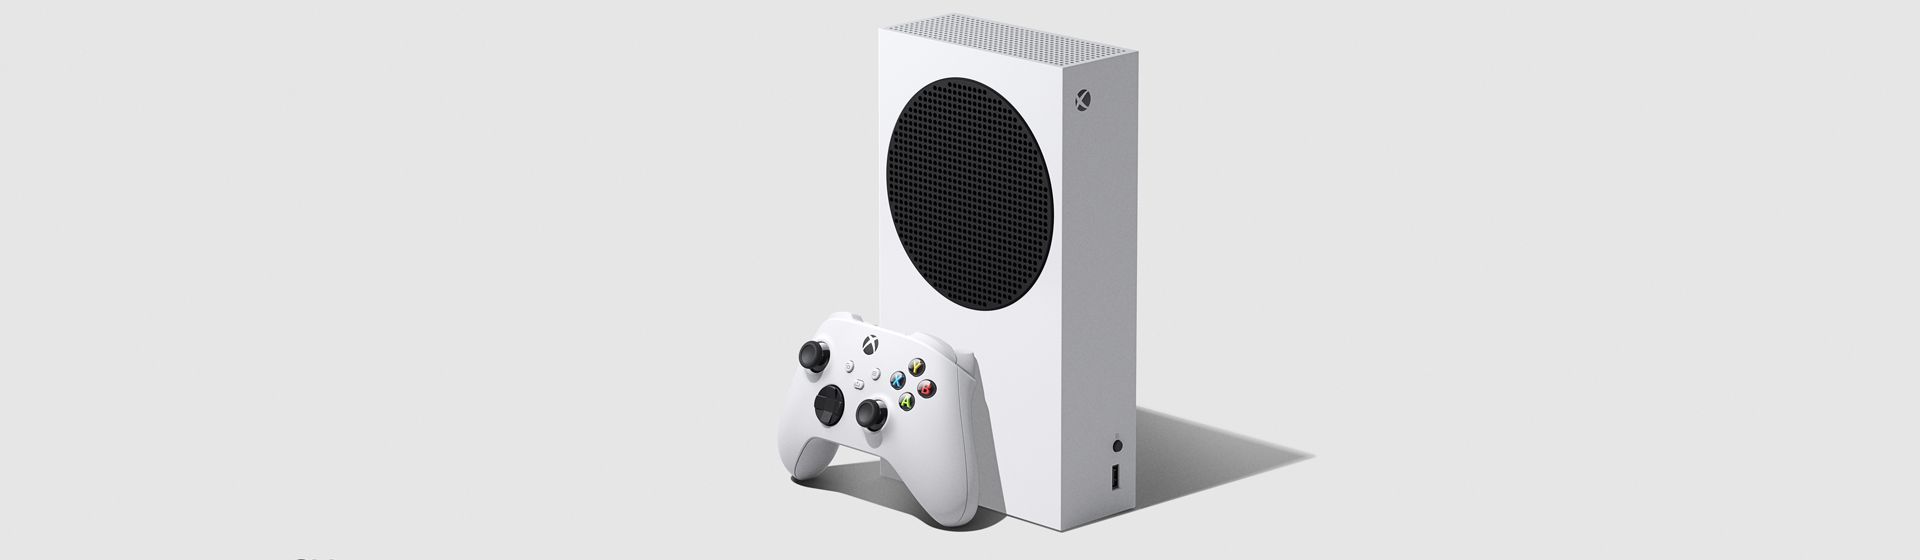 Controle do Xbox 360 será relançado para Xbox Series X